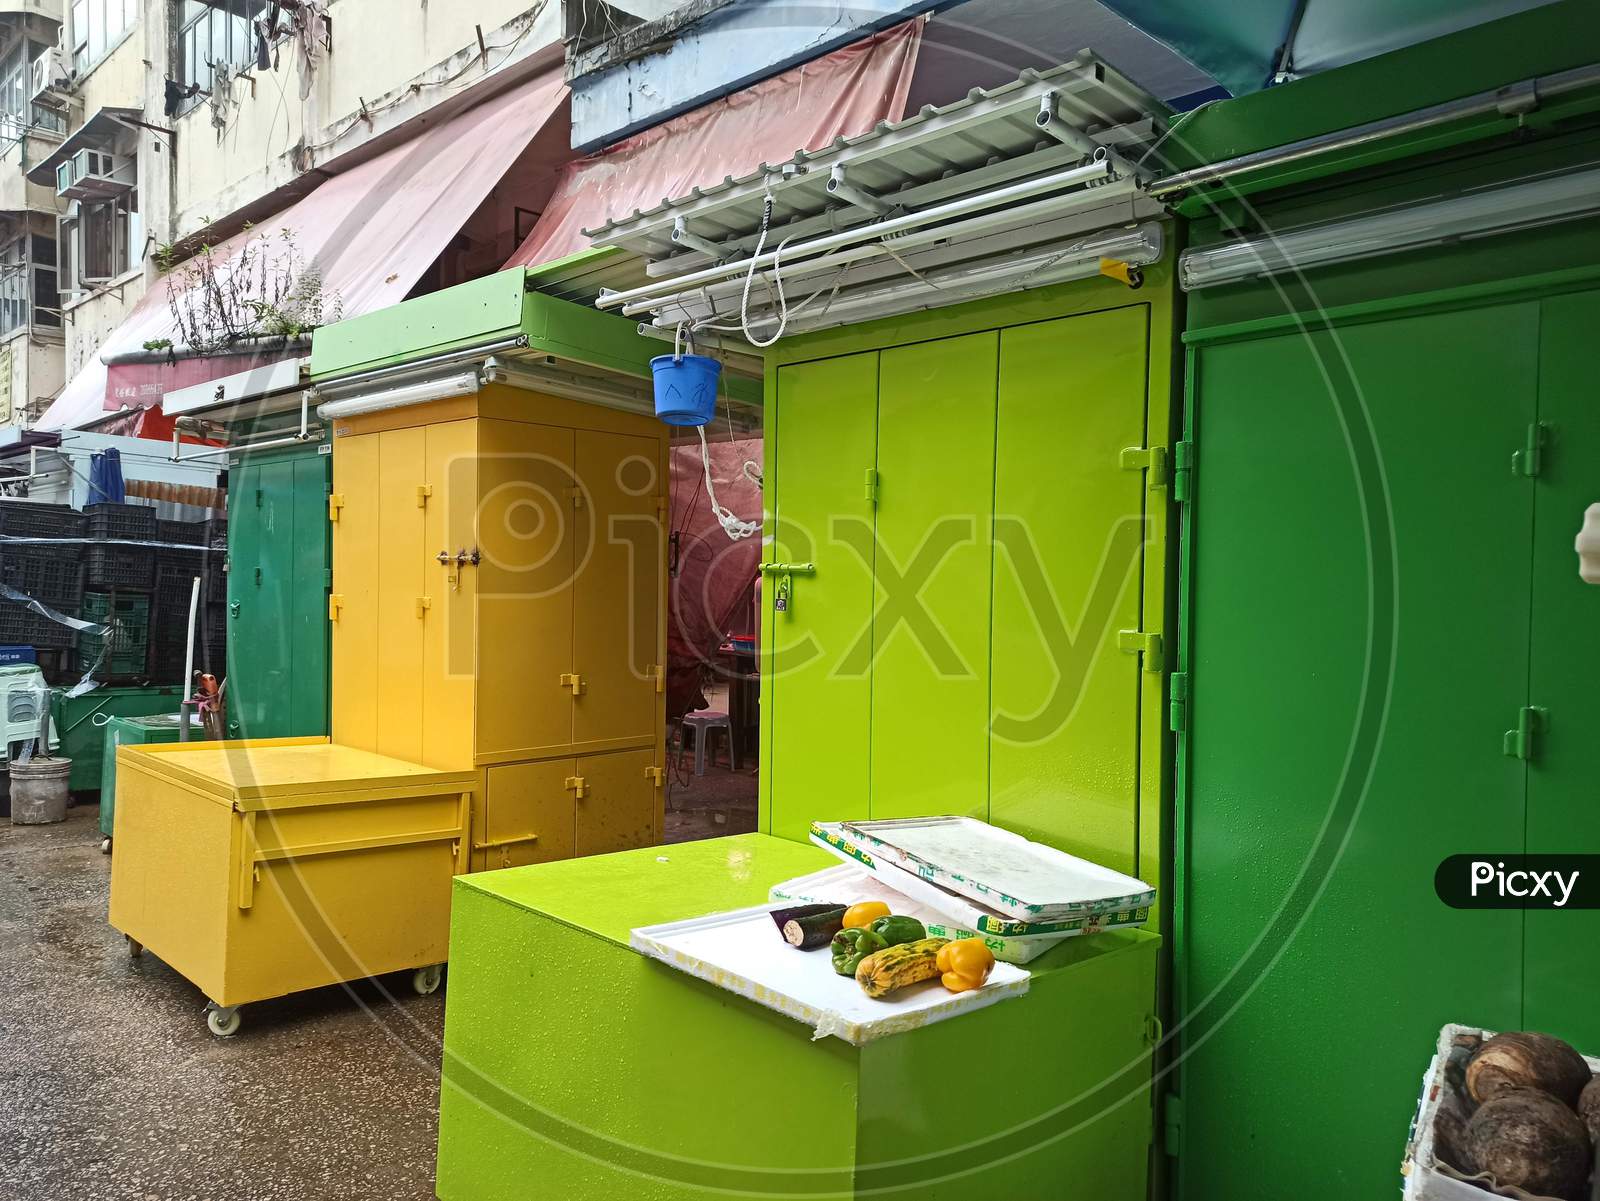 Colorful wet market shops